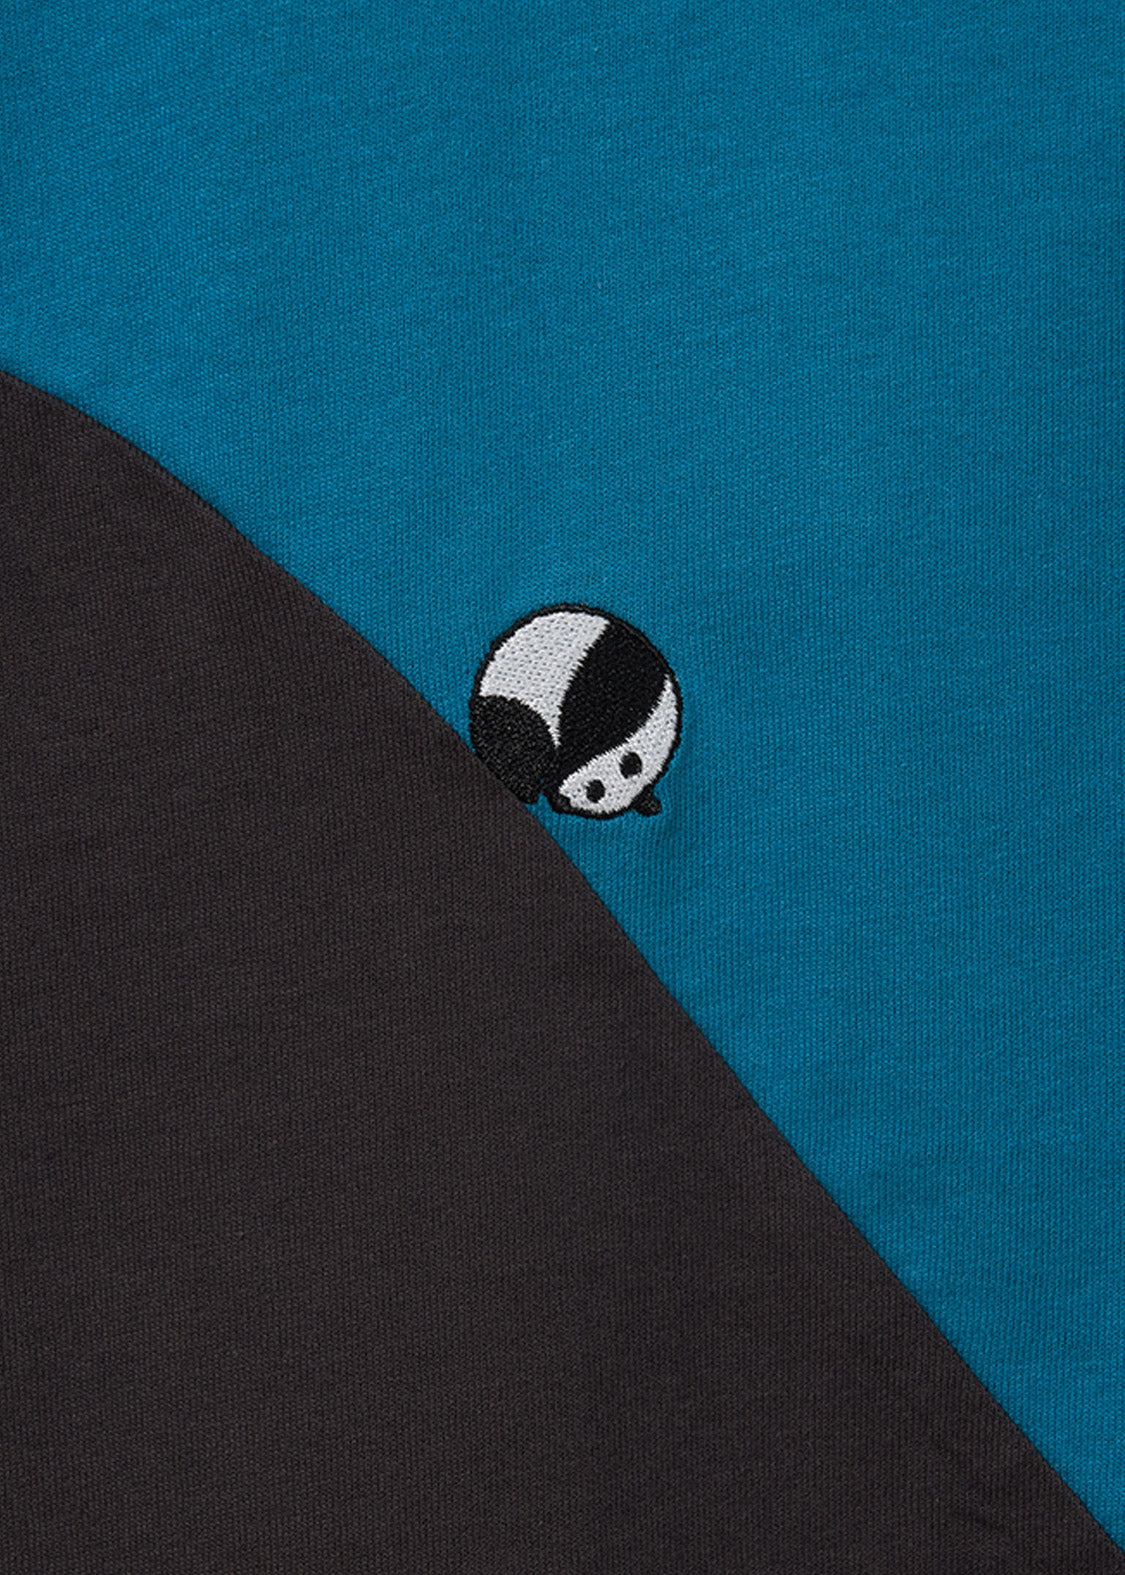 Big Silhouette Half Sleeve Tee (Rolling Pandas 3)